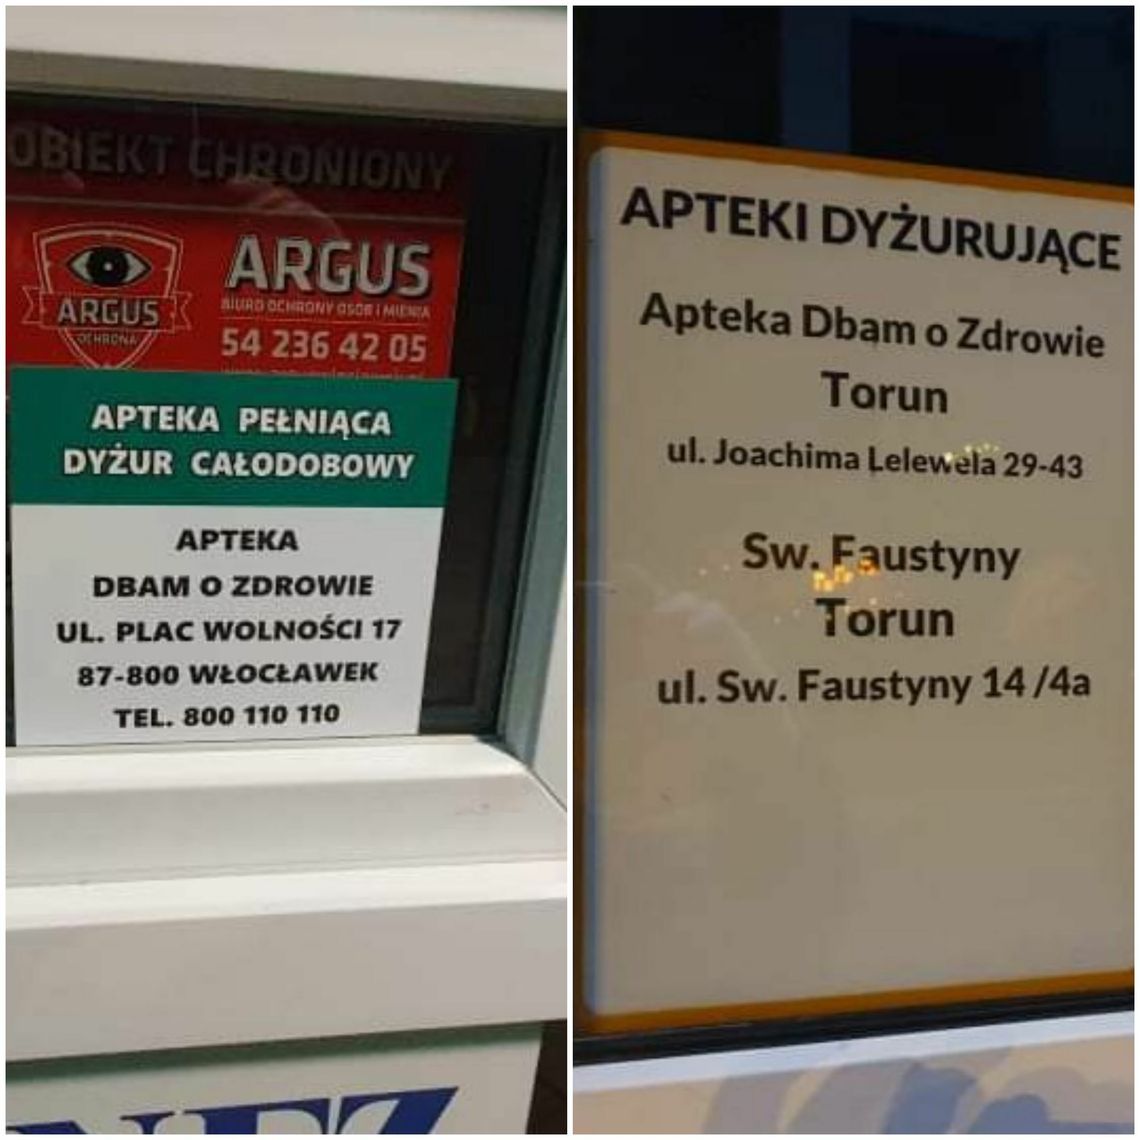 Uwaga włocławianie! Najbliższa apteka całodobowa w Toruniu! Odsyła do niej apteka na placu Wolności 